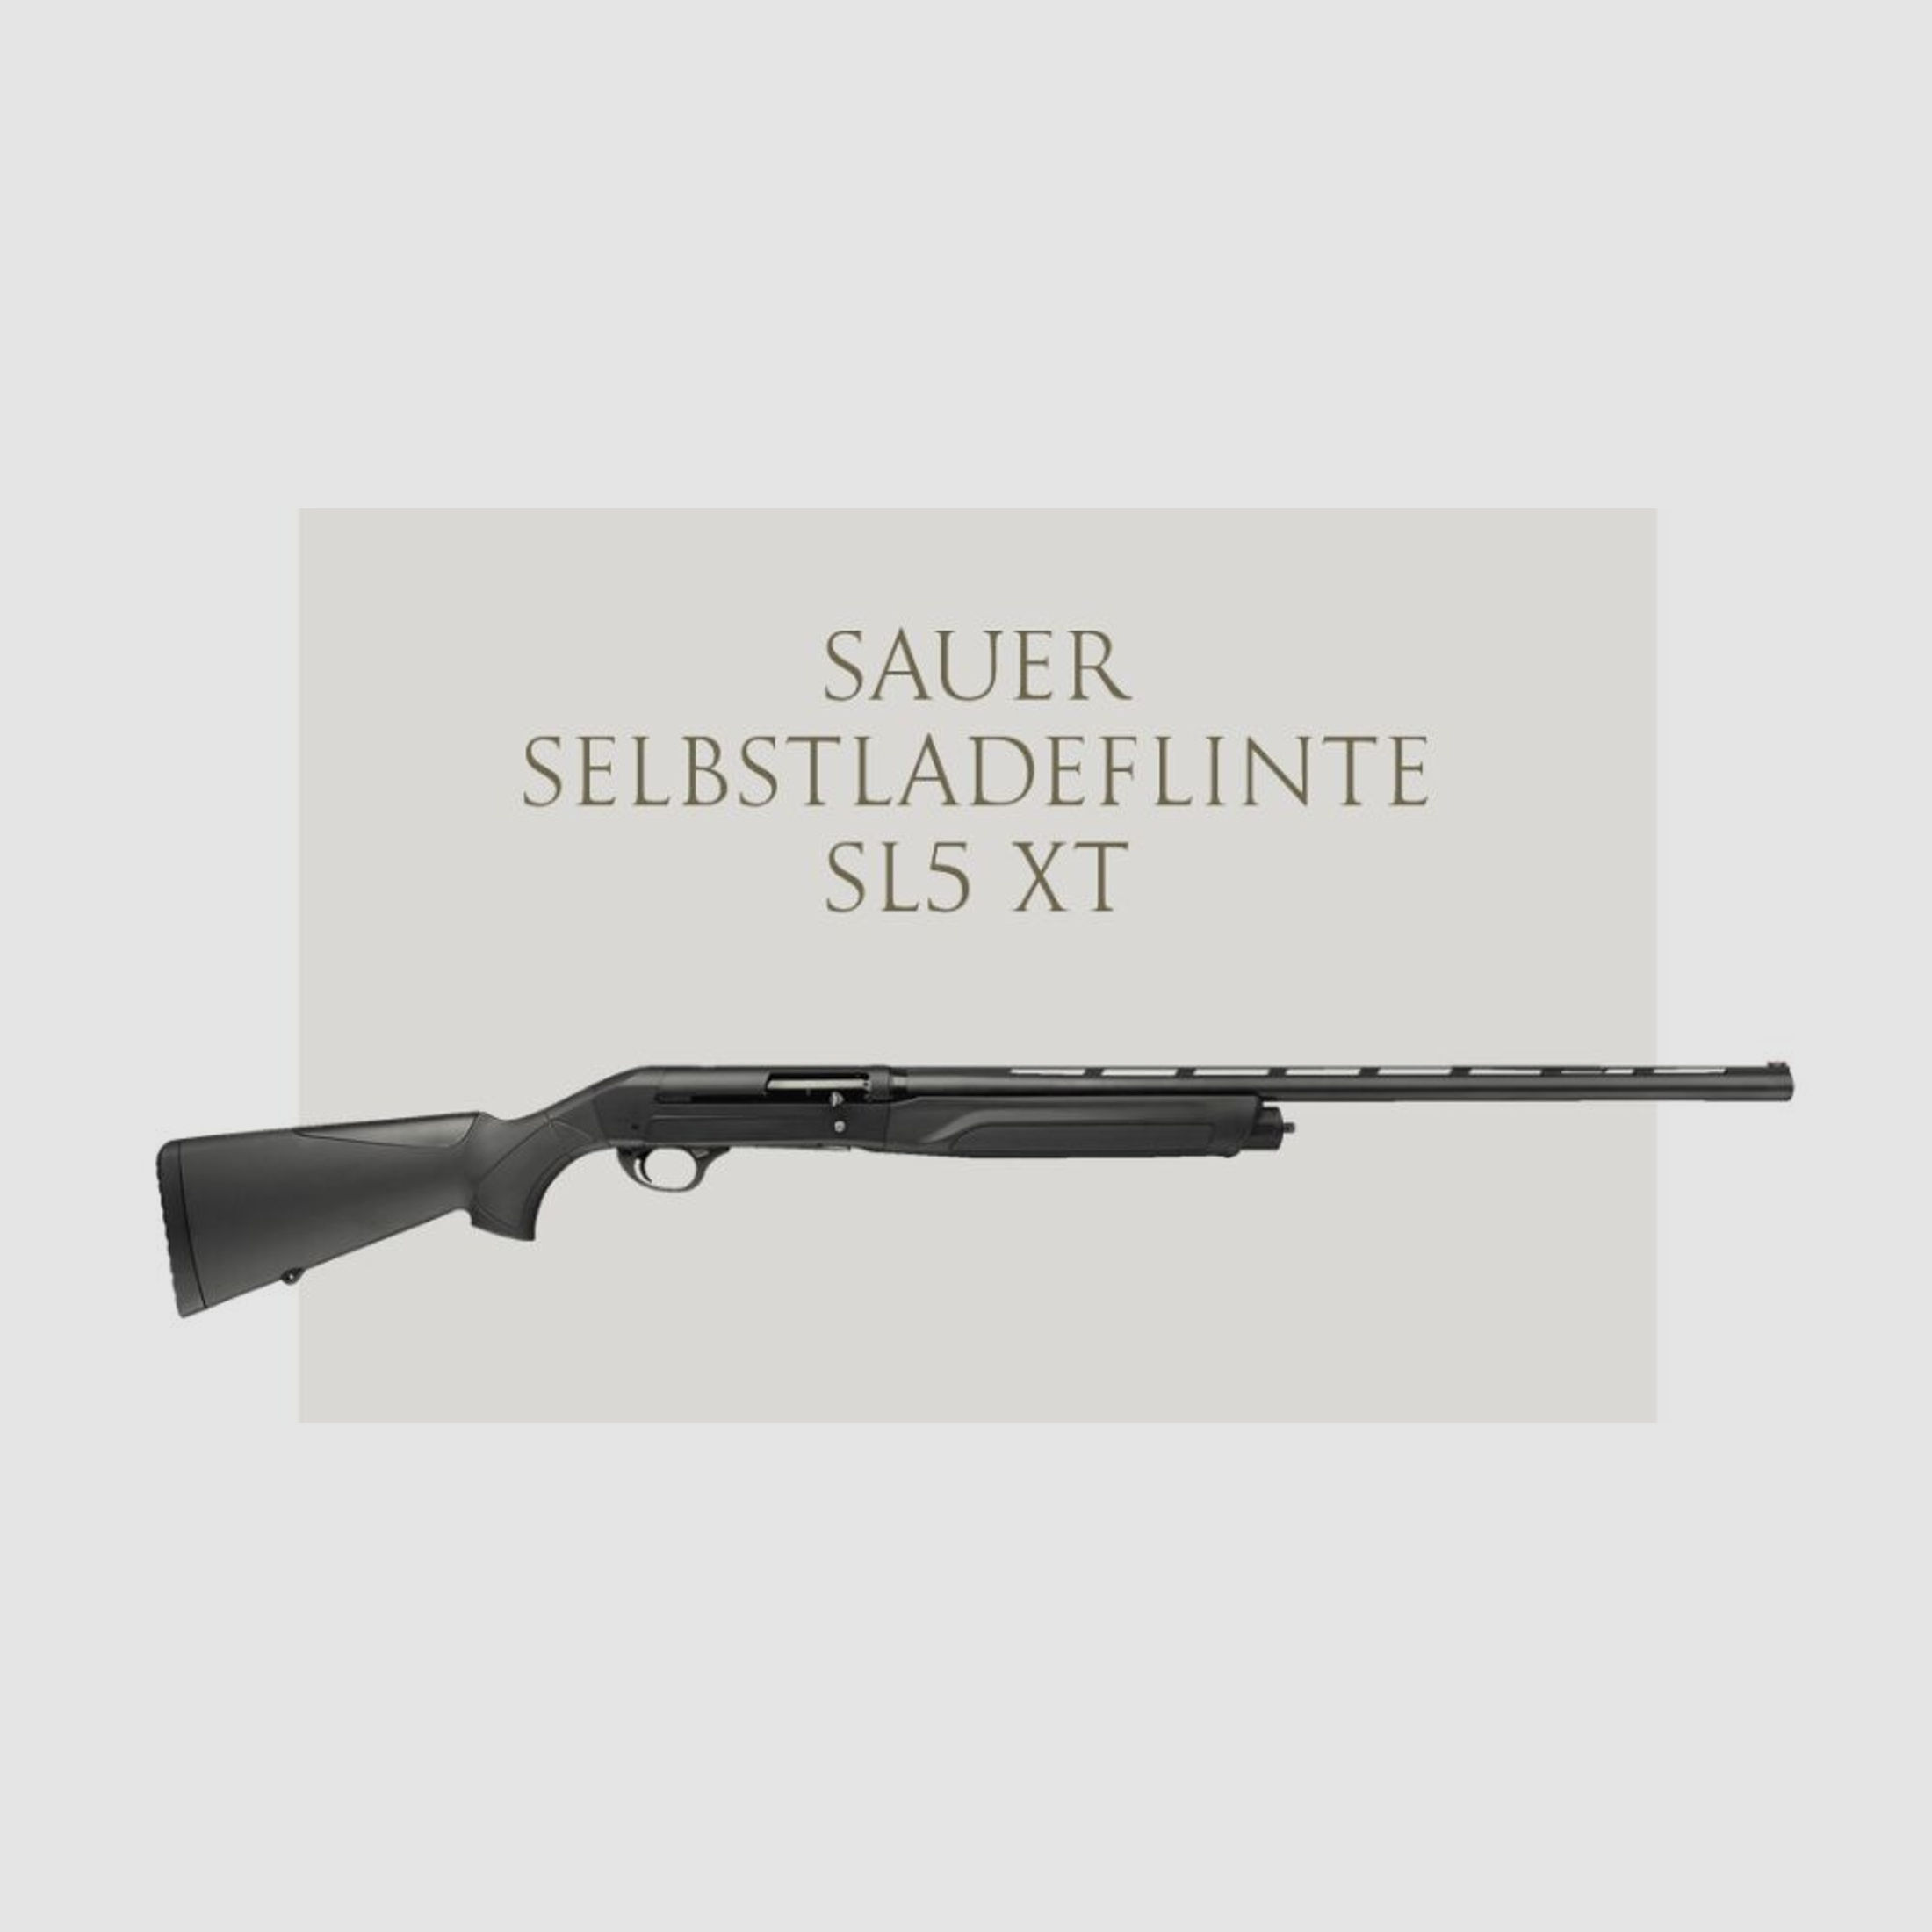 J.P. Sauer & Sohn	 Sauer Selbstladeflinte SL5 XT 700/760 mm Kal.12/76, 2+1